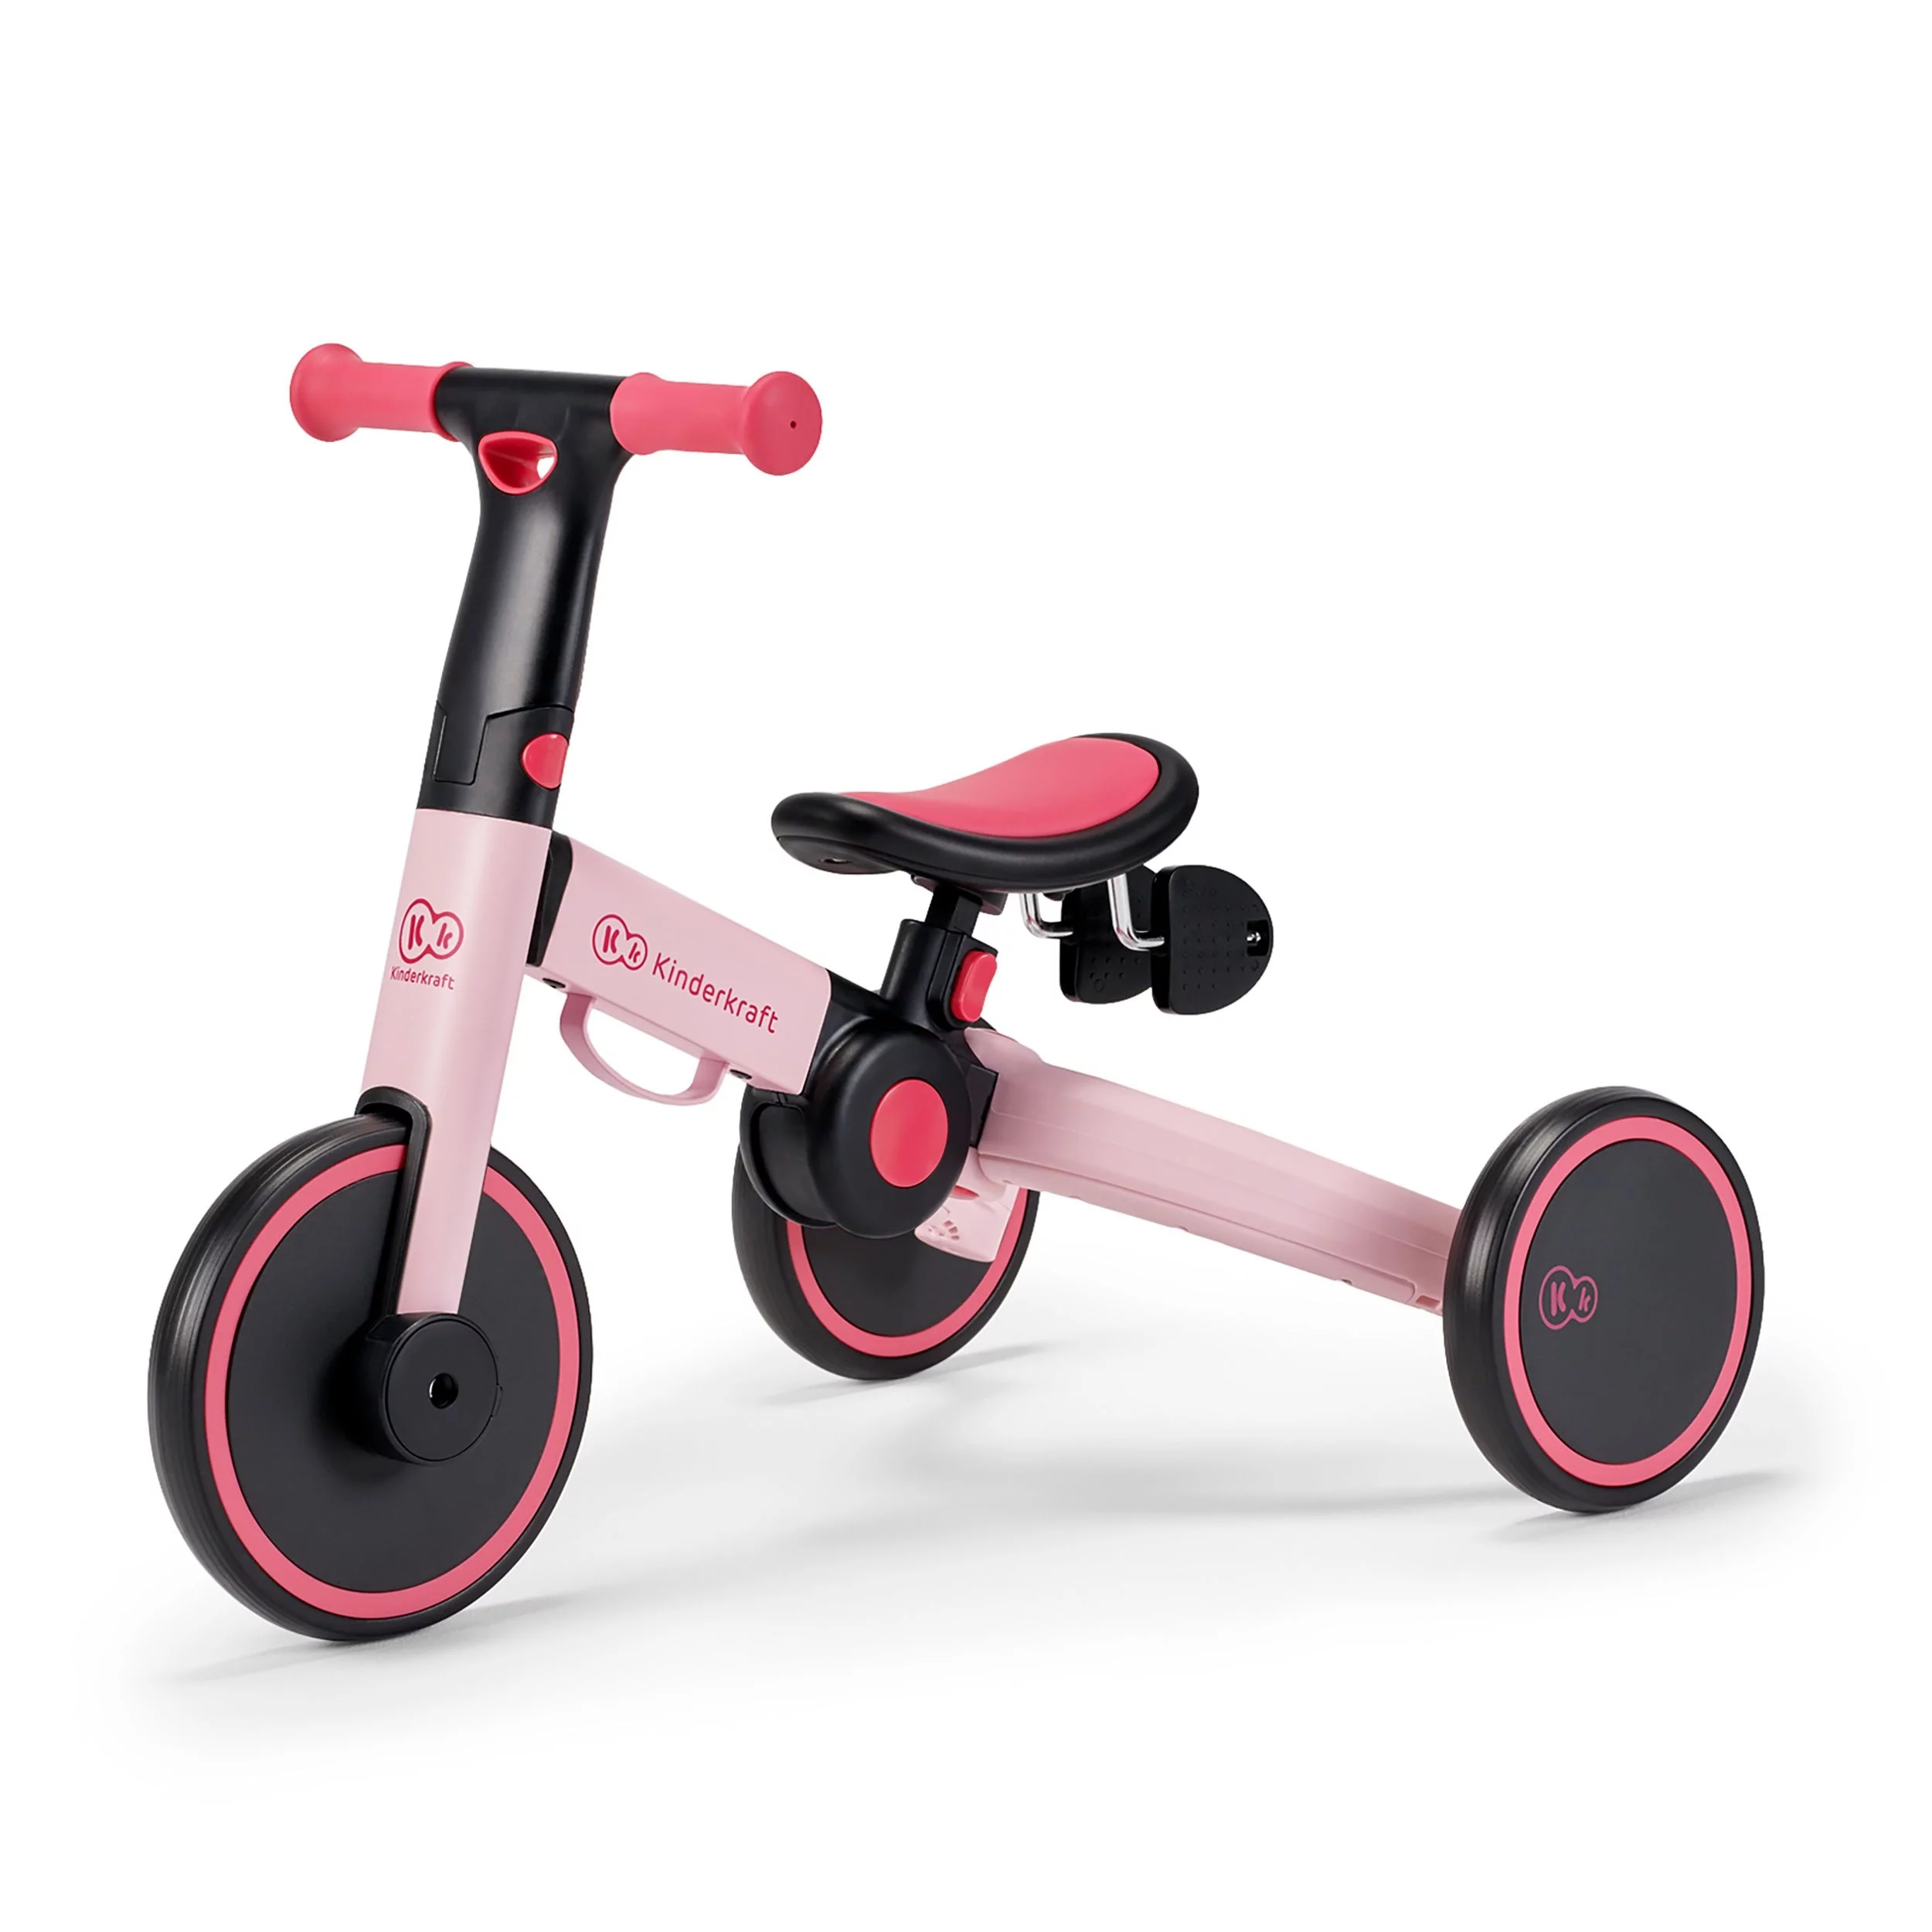 Kinderkraft 4TRIKE Mulit-function Tricycle